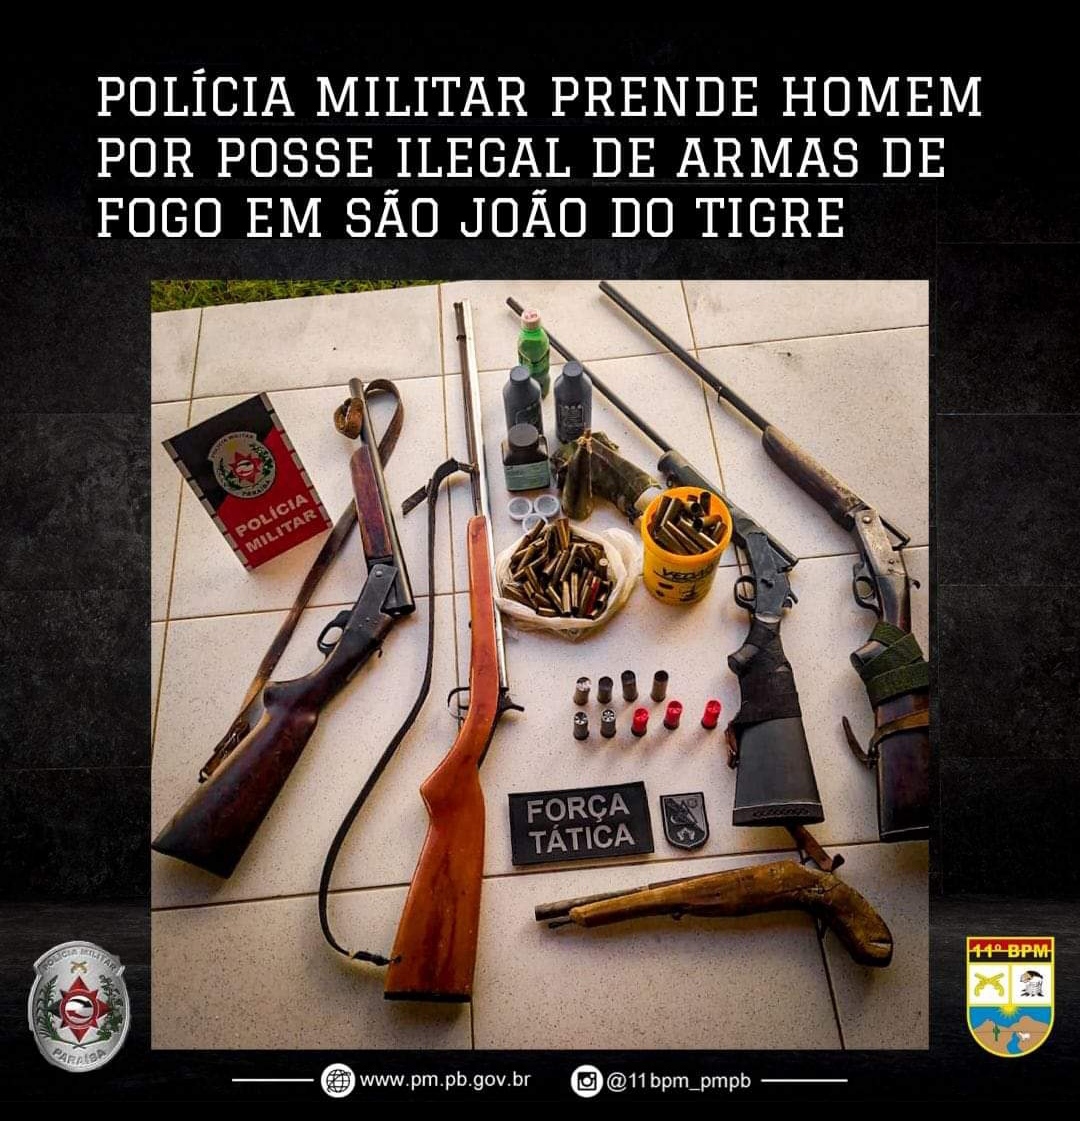 IMG_20220620_113150 POLICIA MILITAR PRENDE HOMEM POR POSSE ILEGAL DE ARMAS DE FOGO EM SÃO JOÃO DO TIGRE